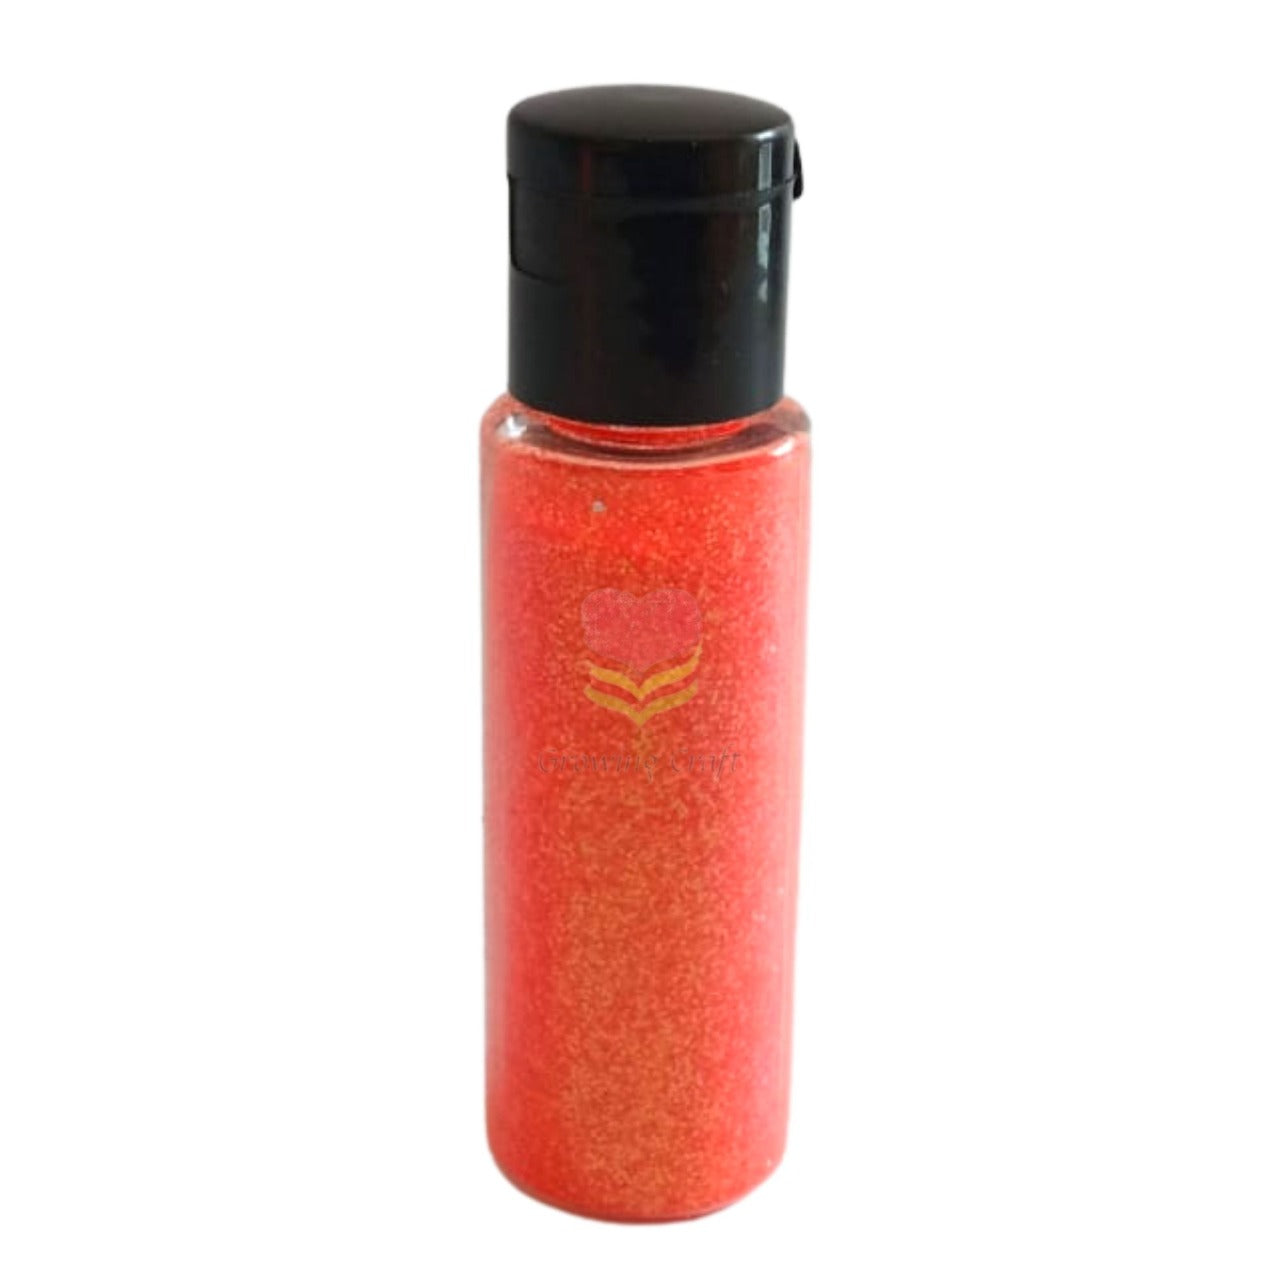 Glitter - Neon Orange Pink - GC GL 013 - Growing Craft - Best craft Supplies